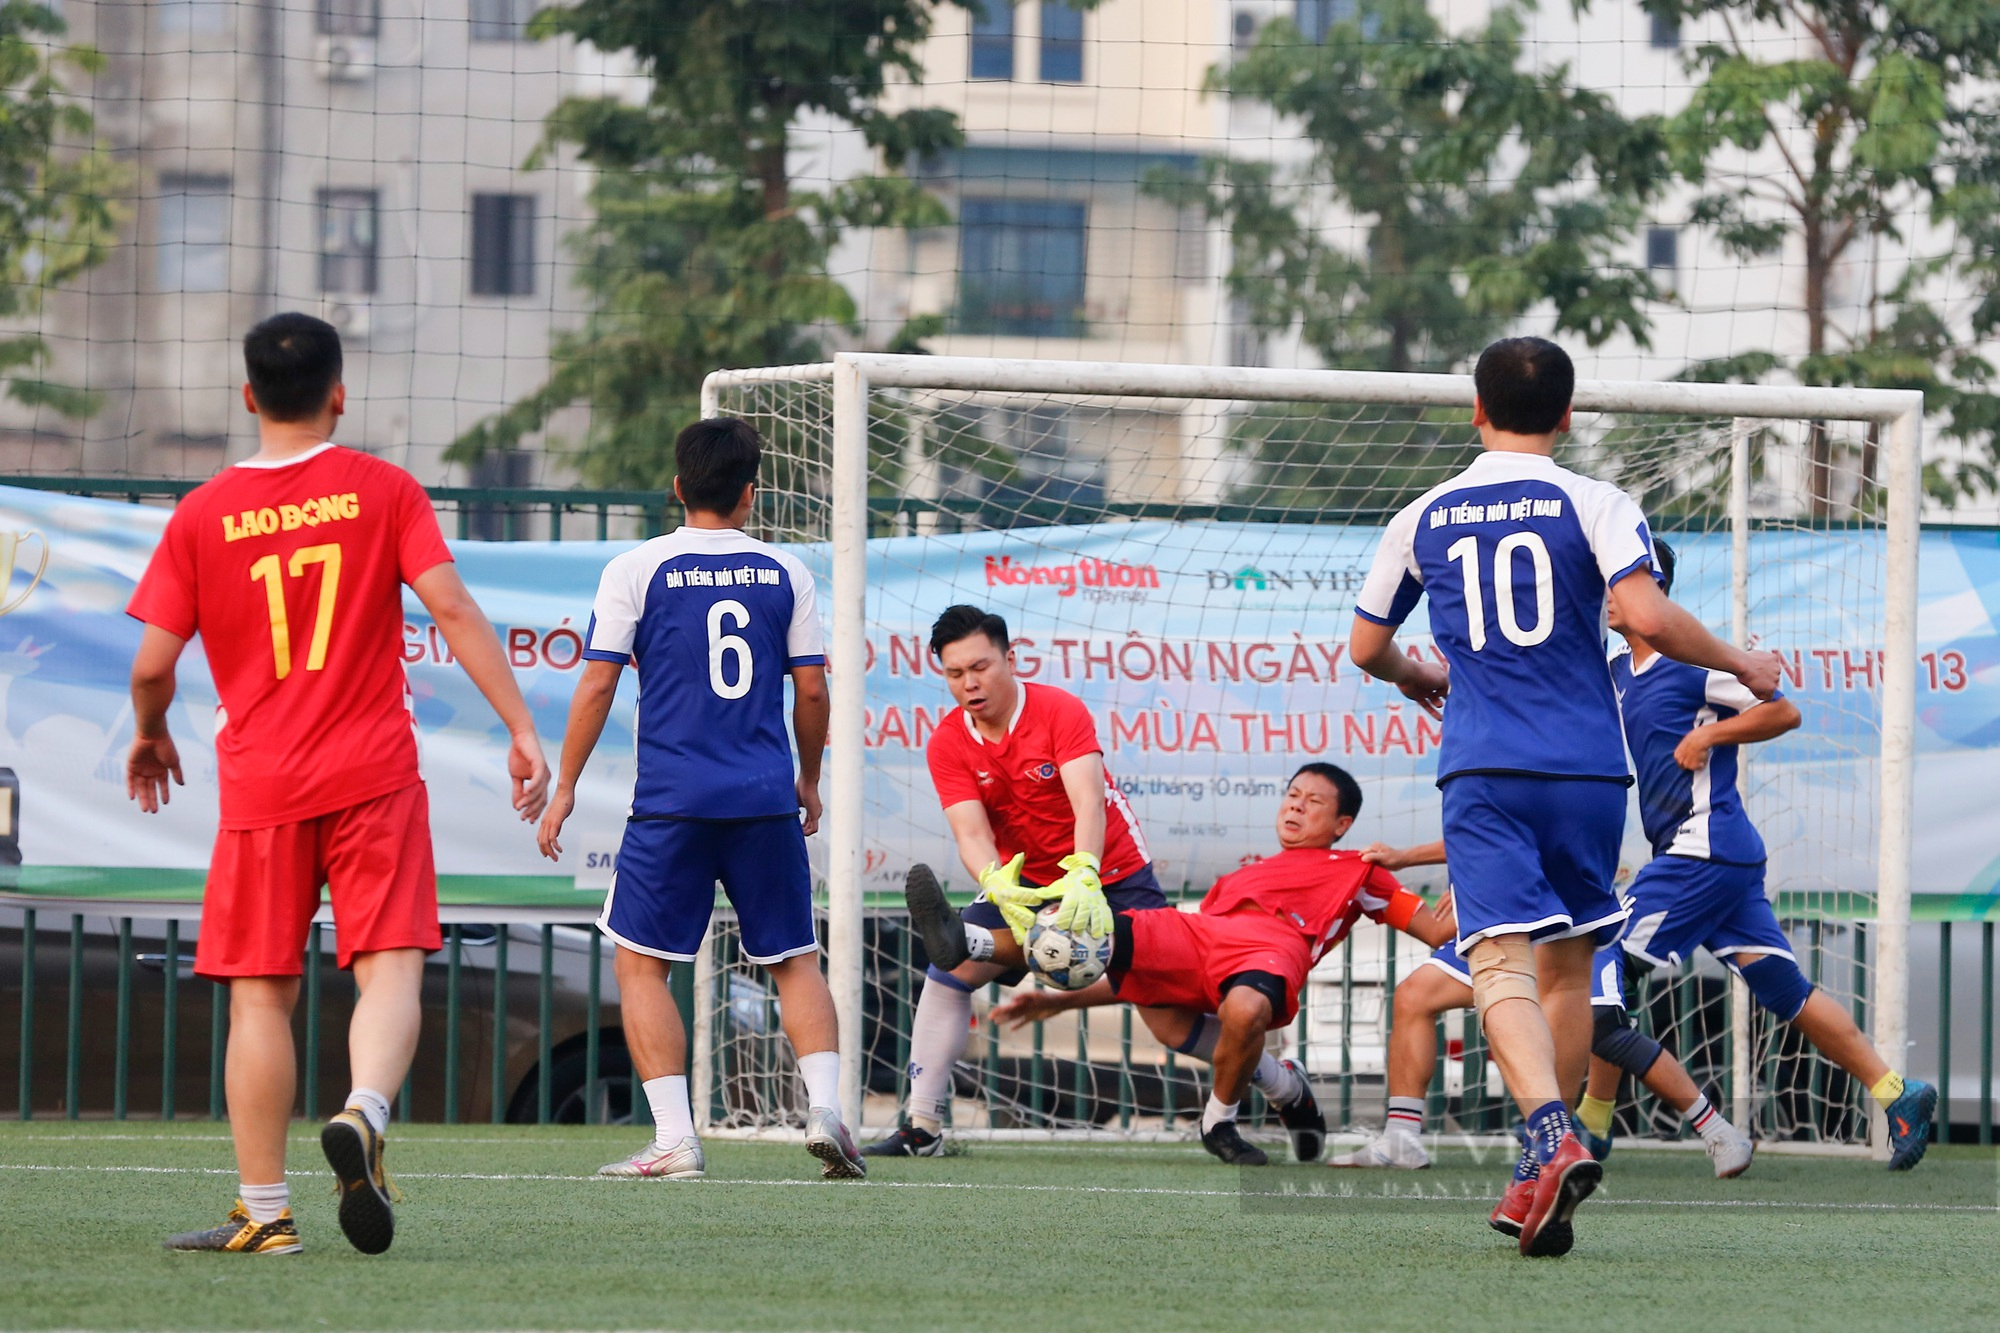 Đội bóng VOV chính thức lên ngôi vô địch sau chiến thắng nghẹt thở trước báo Lao Động - Ảnh 10.